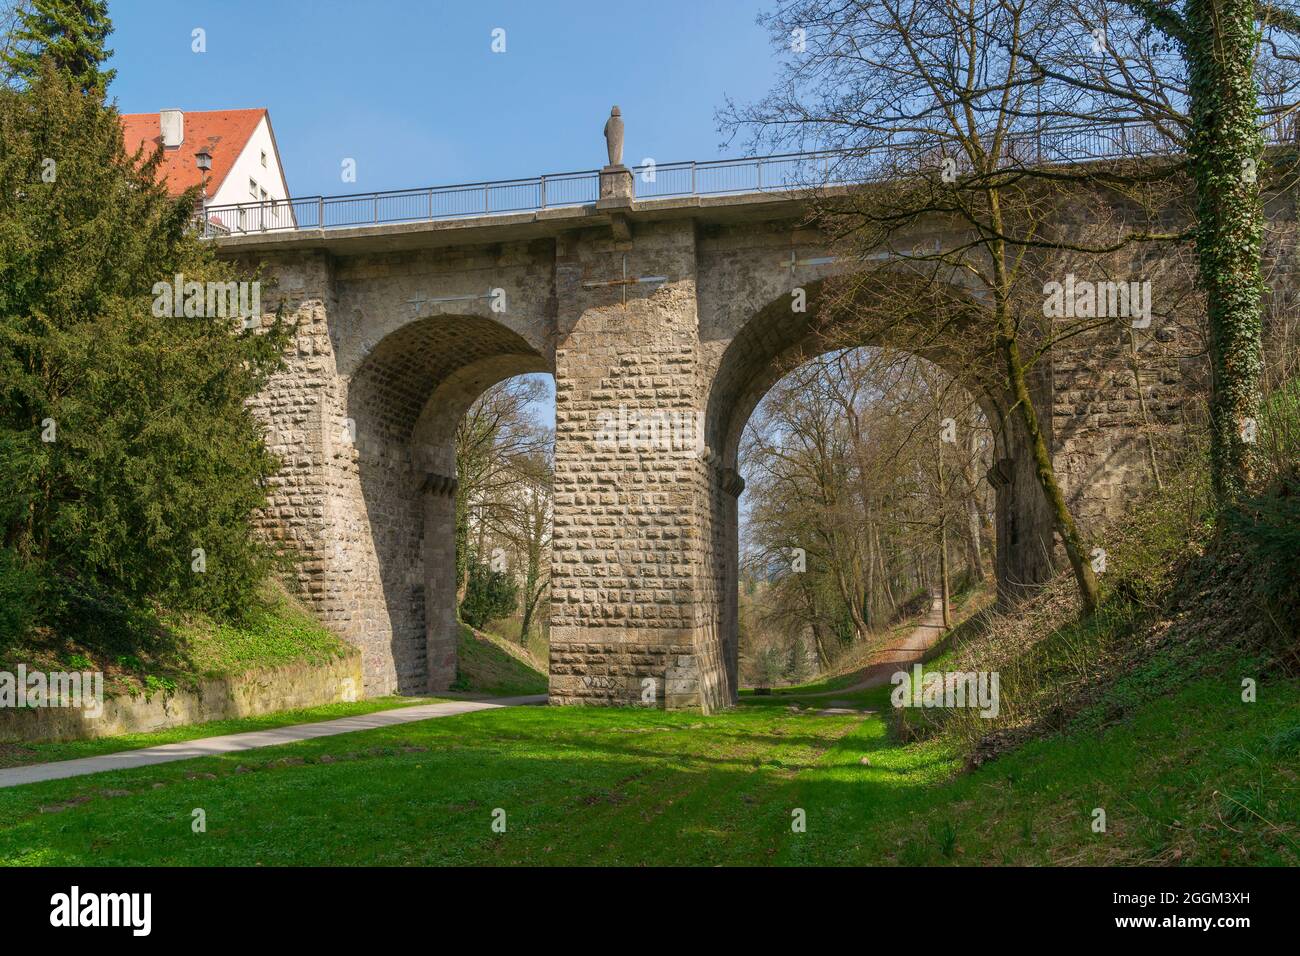 Deutschland, Baden-Württemberg, Rottweil, die Hochbrücke, Brückenpfeilern aus Buckelascharen aus dem 13. Jahrhundert. Stockfoto